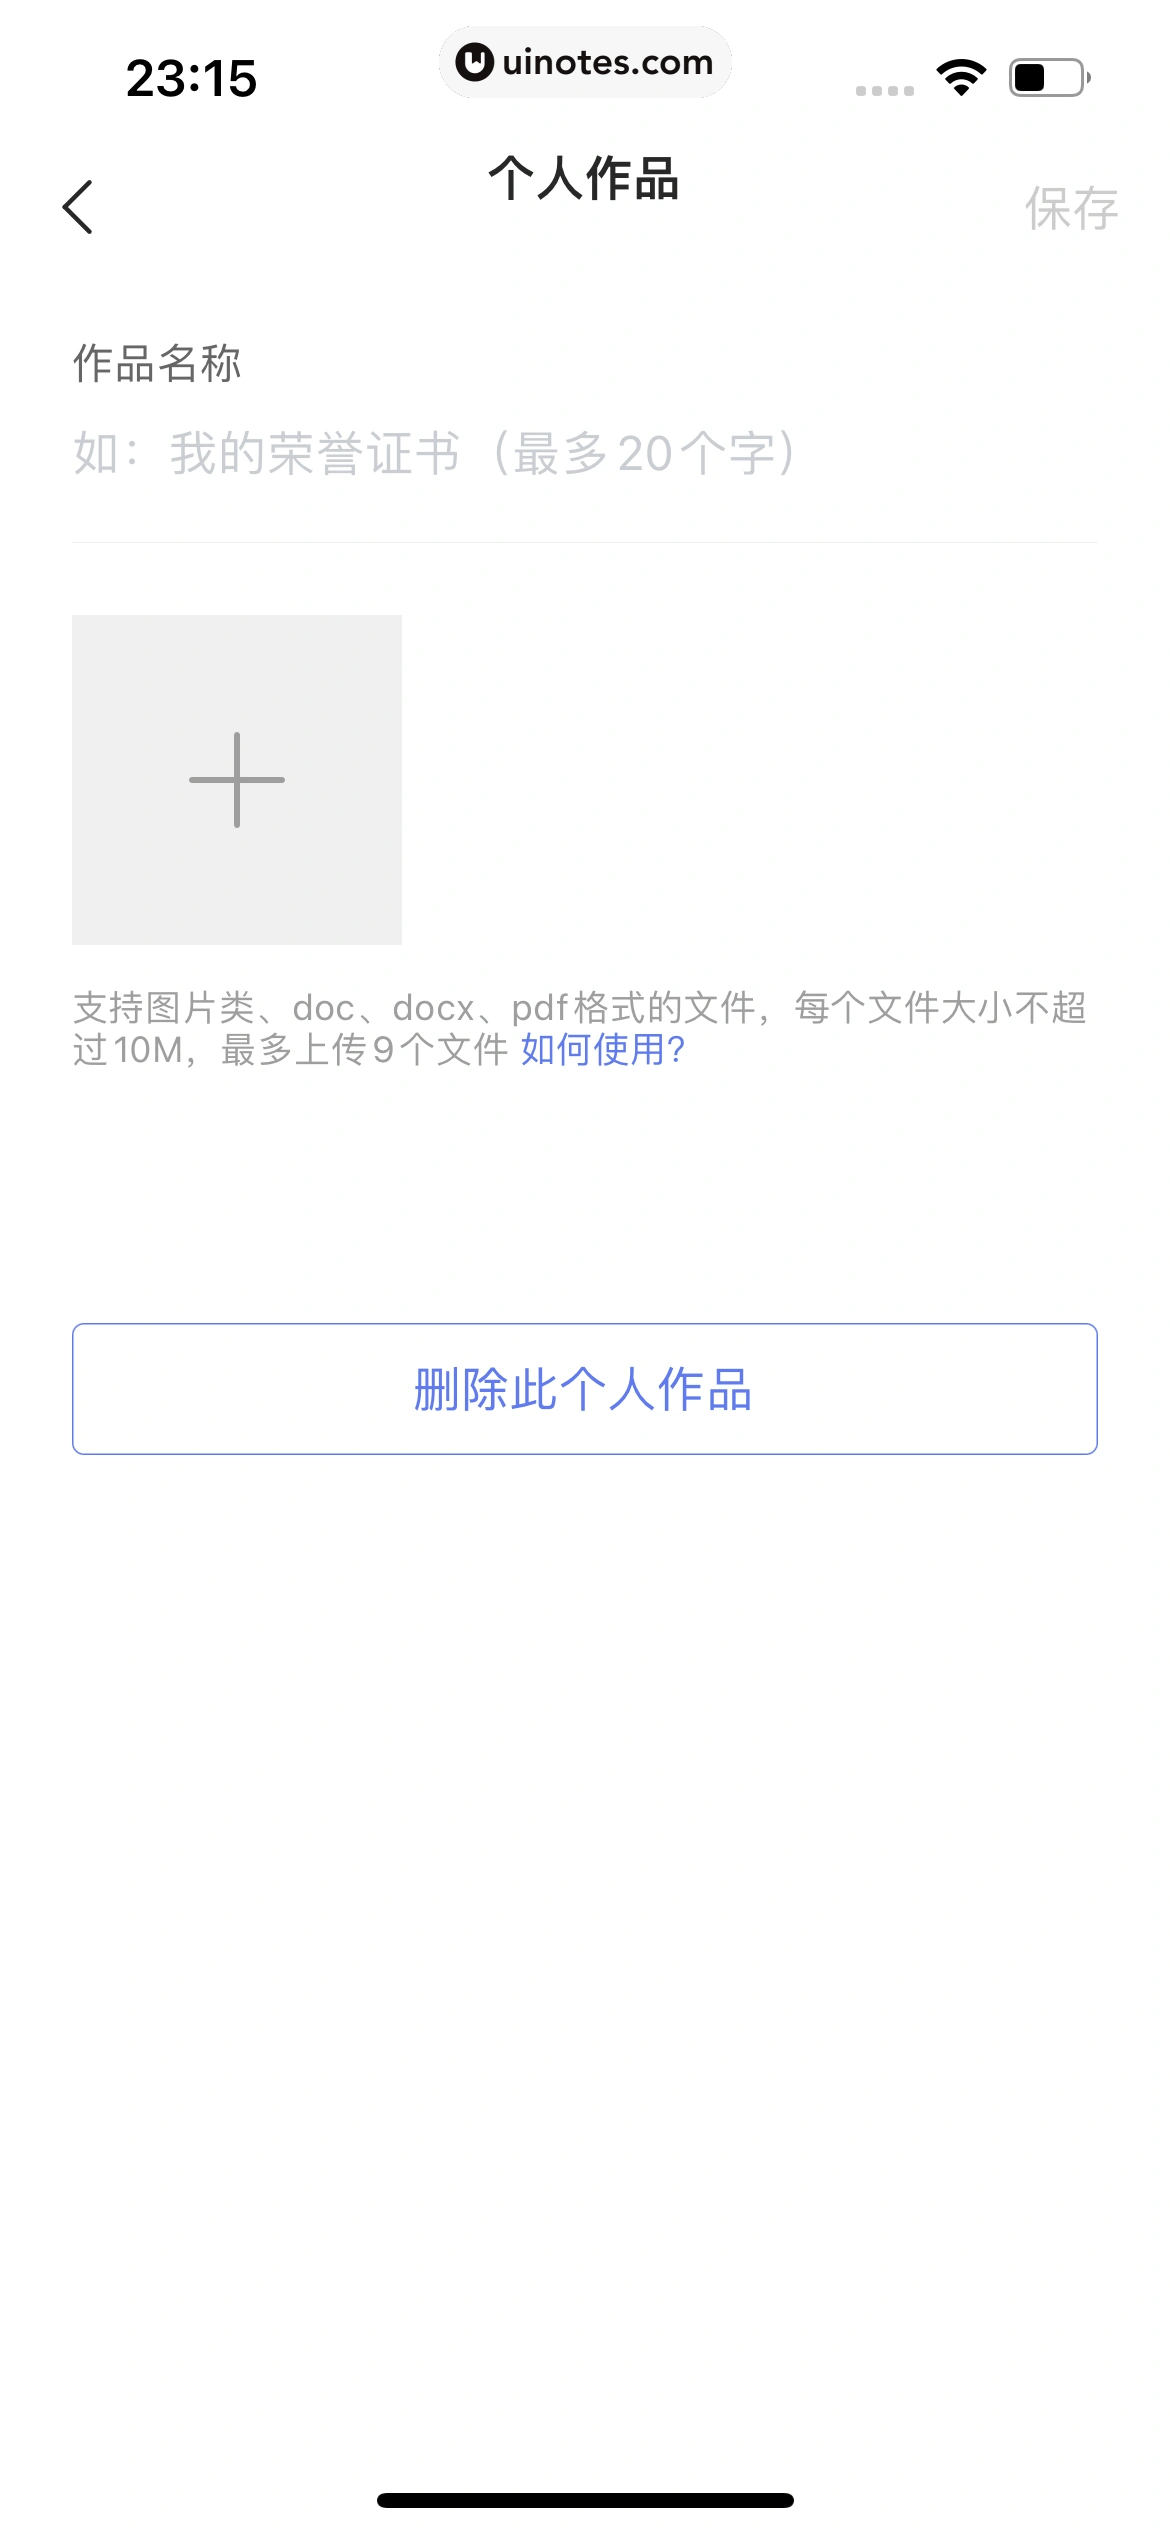 智联招聘 App 截图 528 - UI Notes